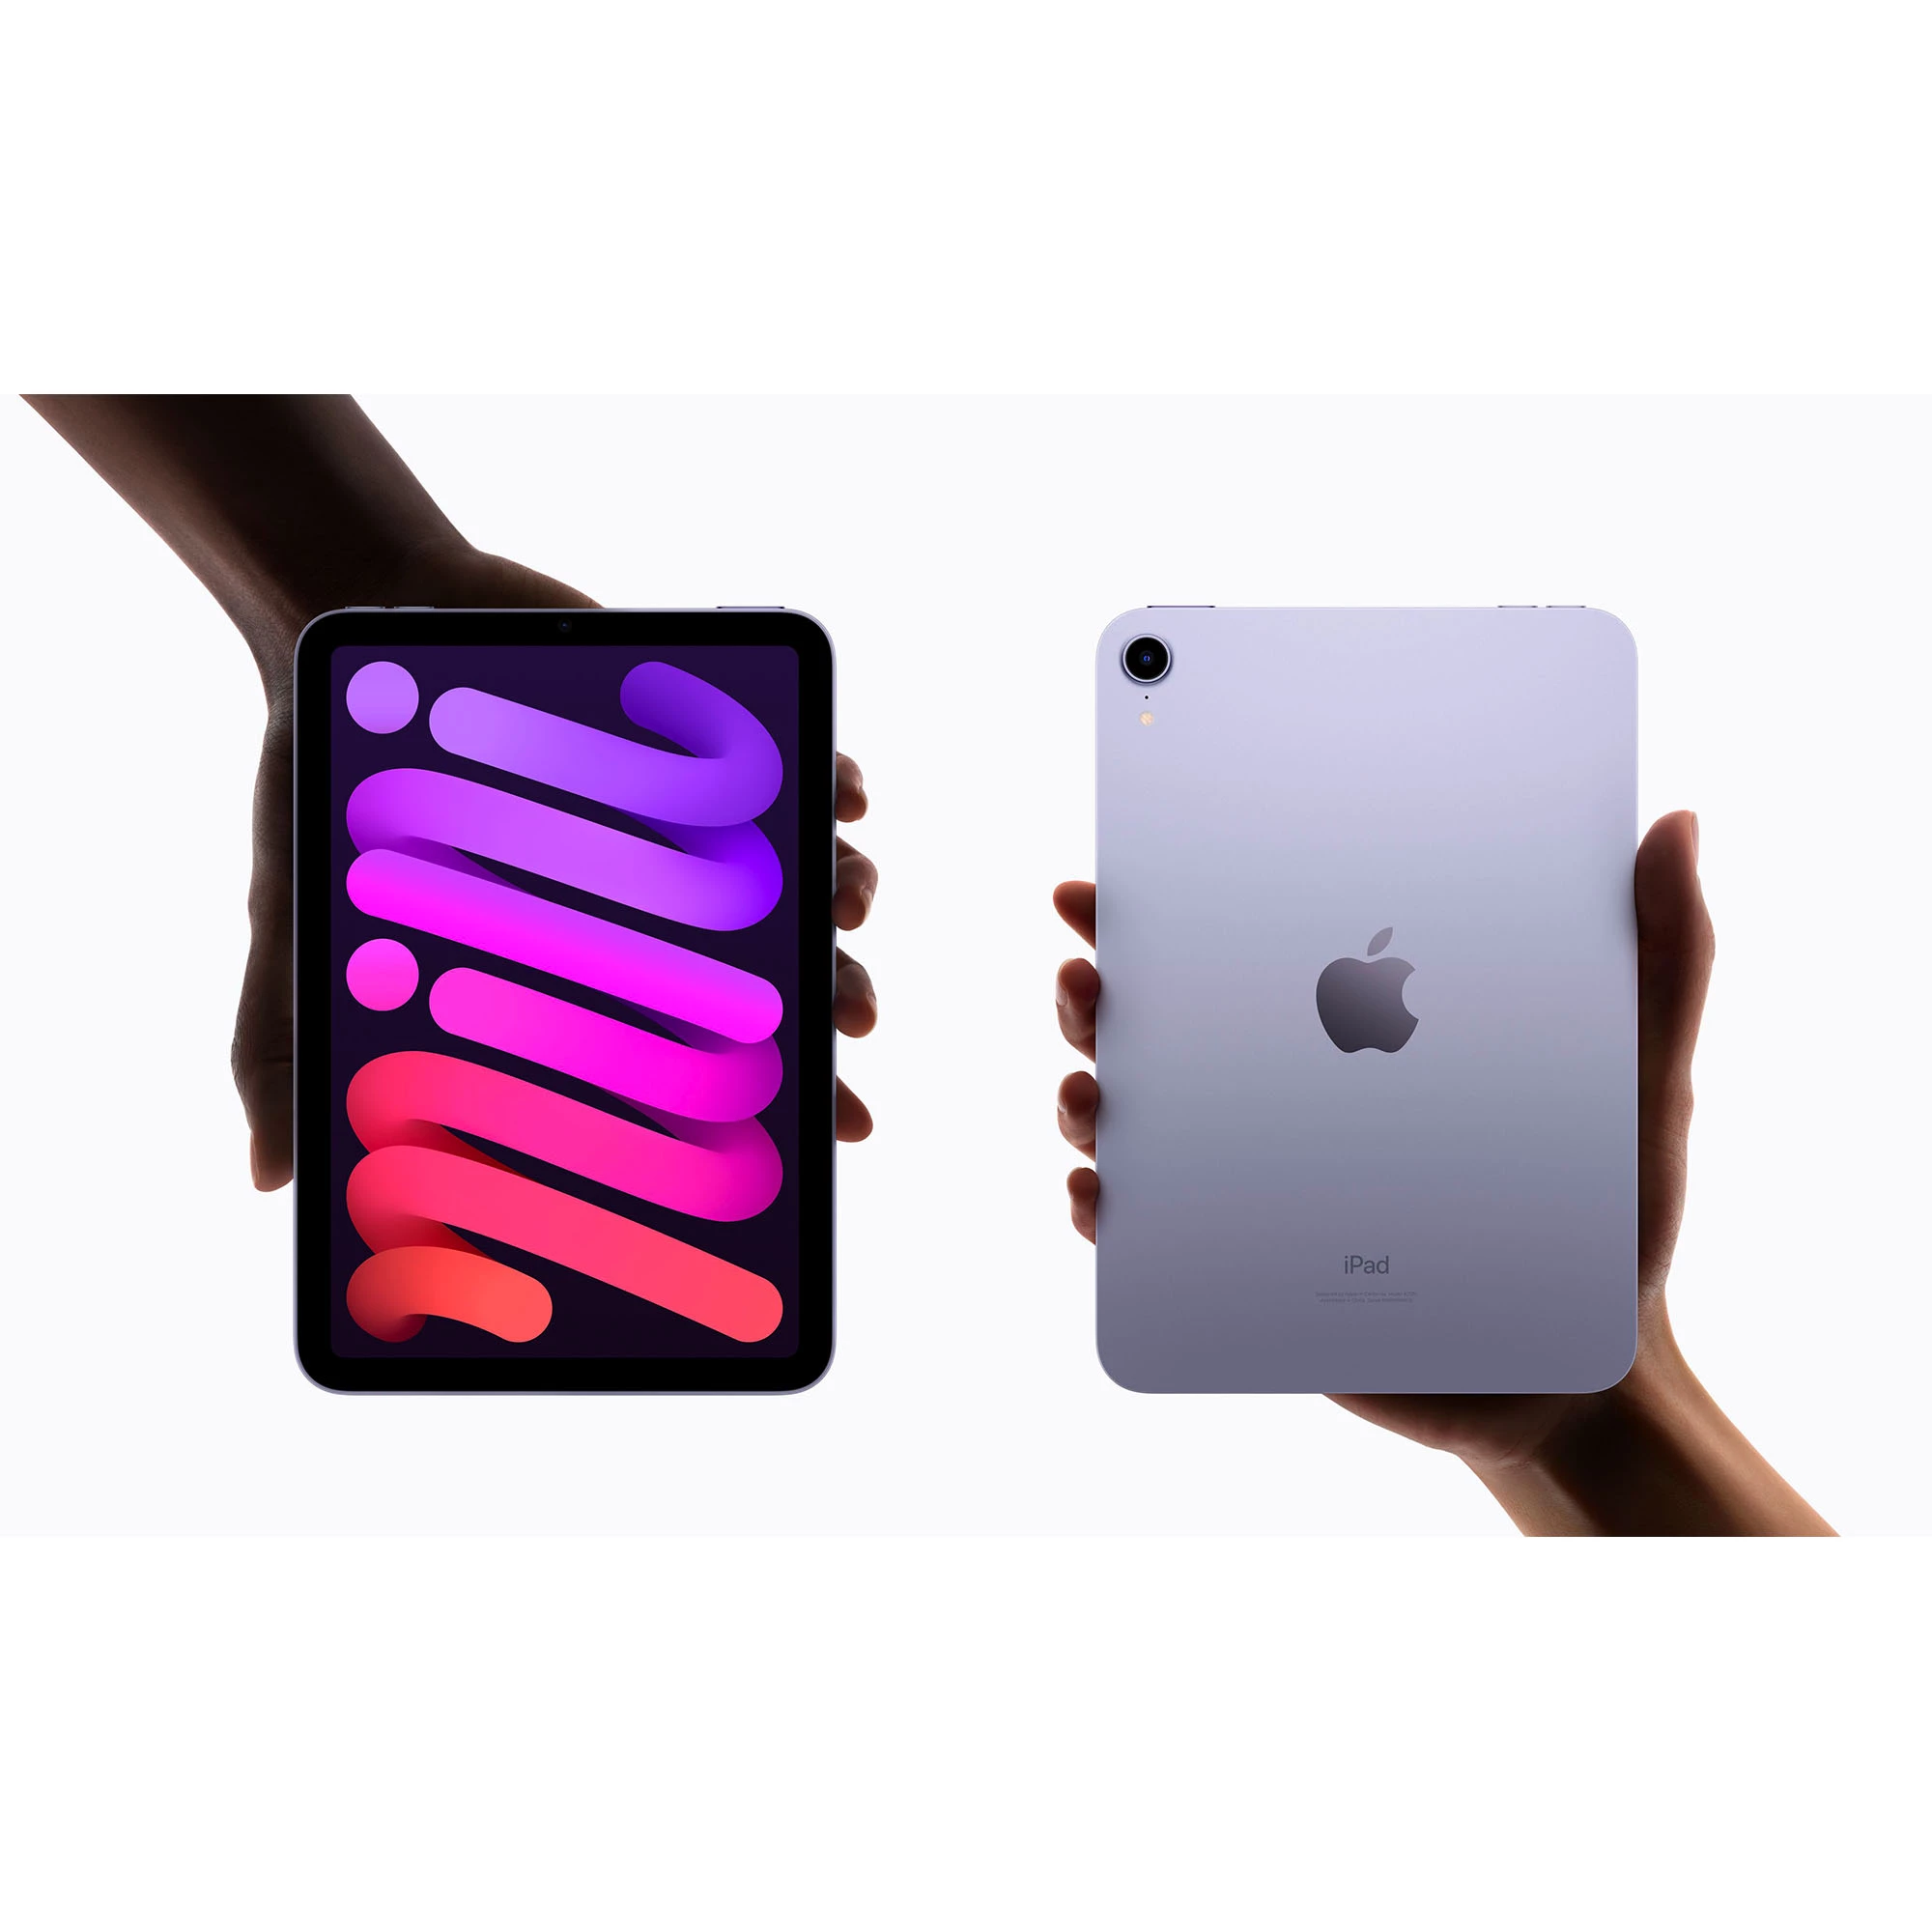 Купить iPad mini Wi-Fi Cellular 256GB Pink (MLX93) выгодно в Киеве  цена и обзор в интернет магазине NewTime